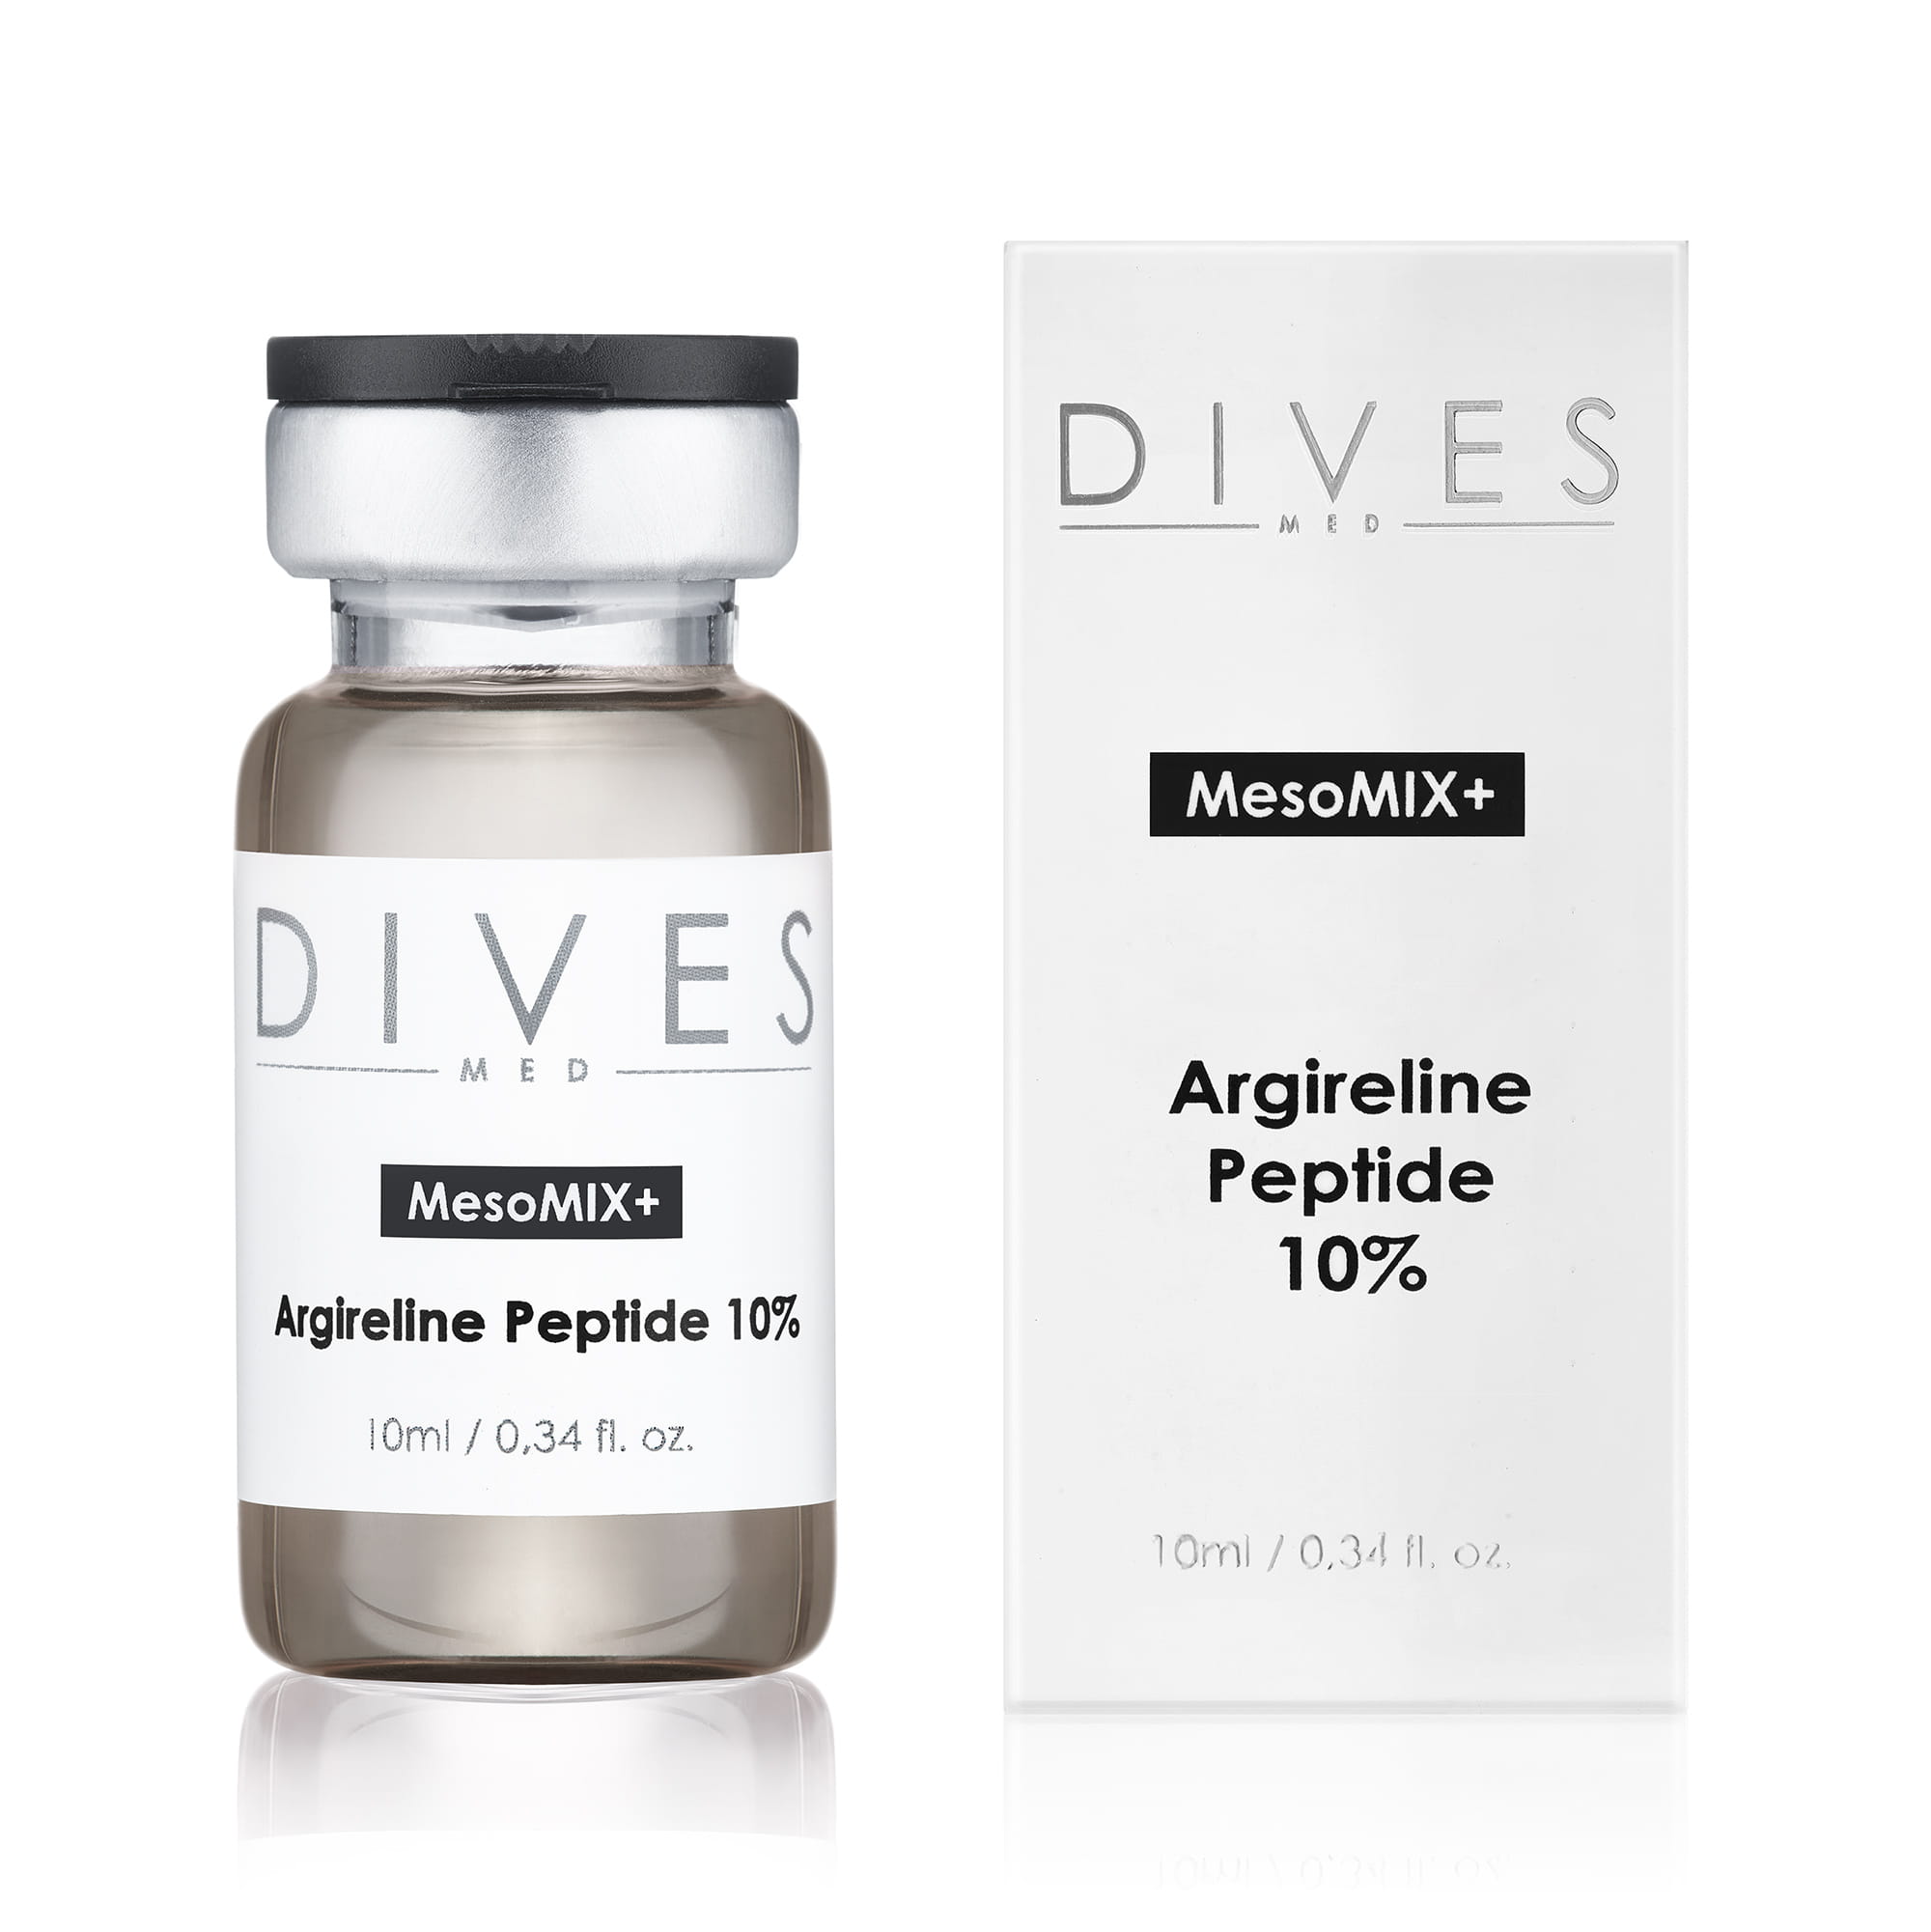 DIVES MED - Argireline Peptide 10% (10ml)